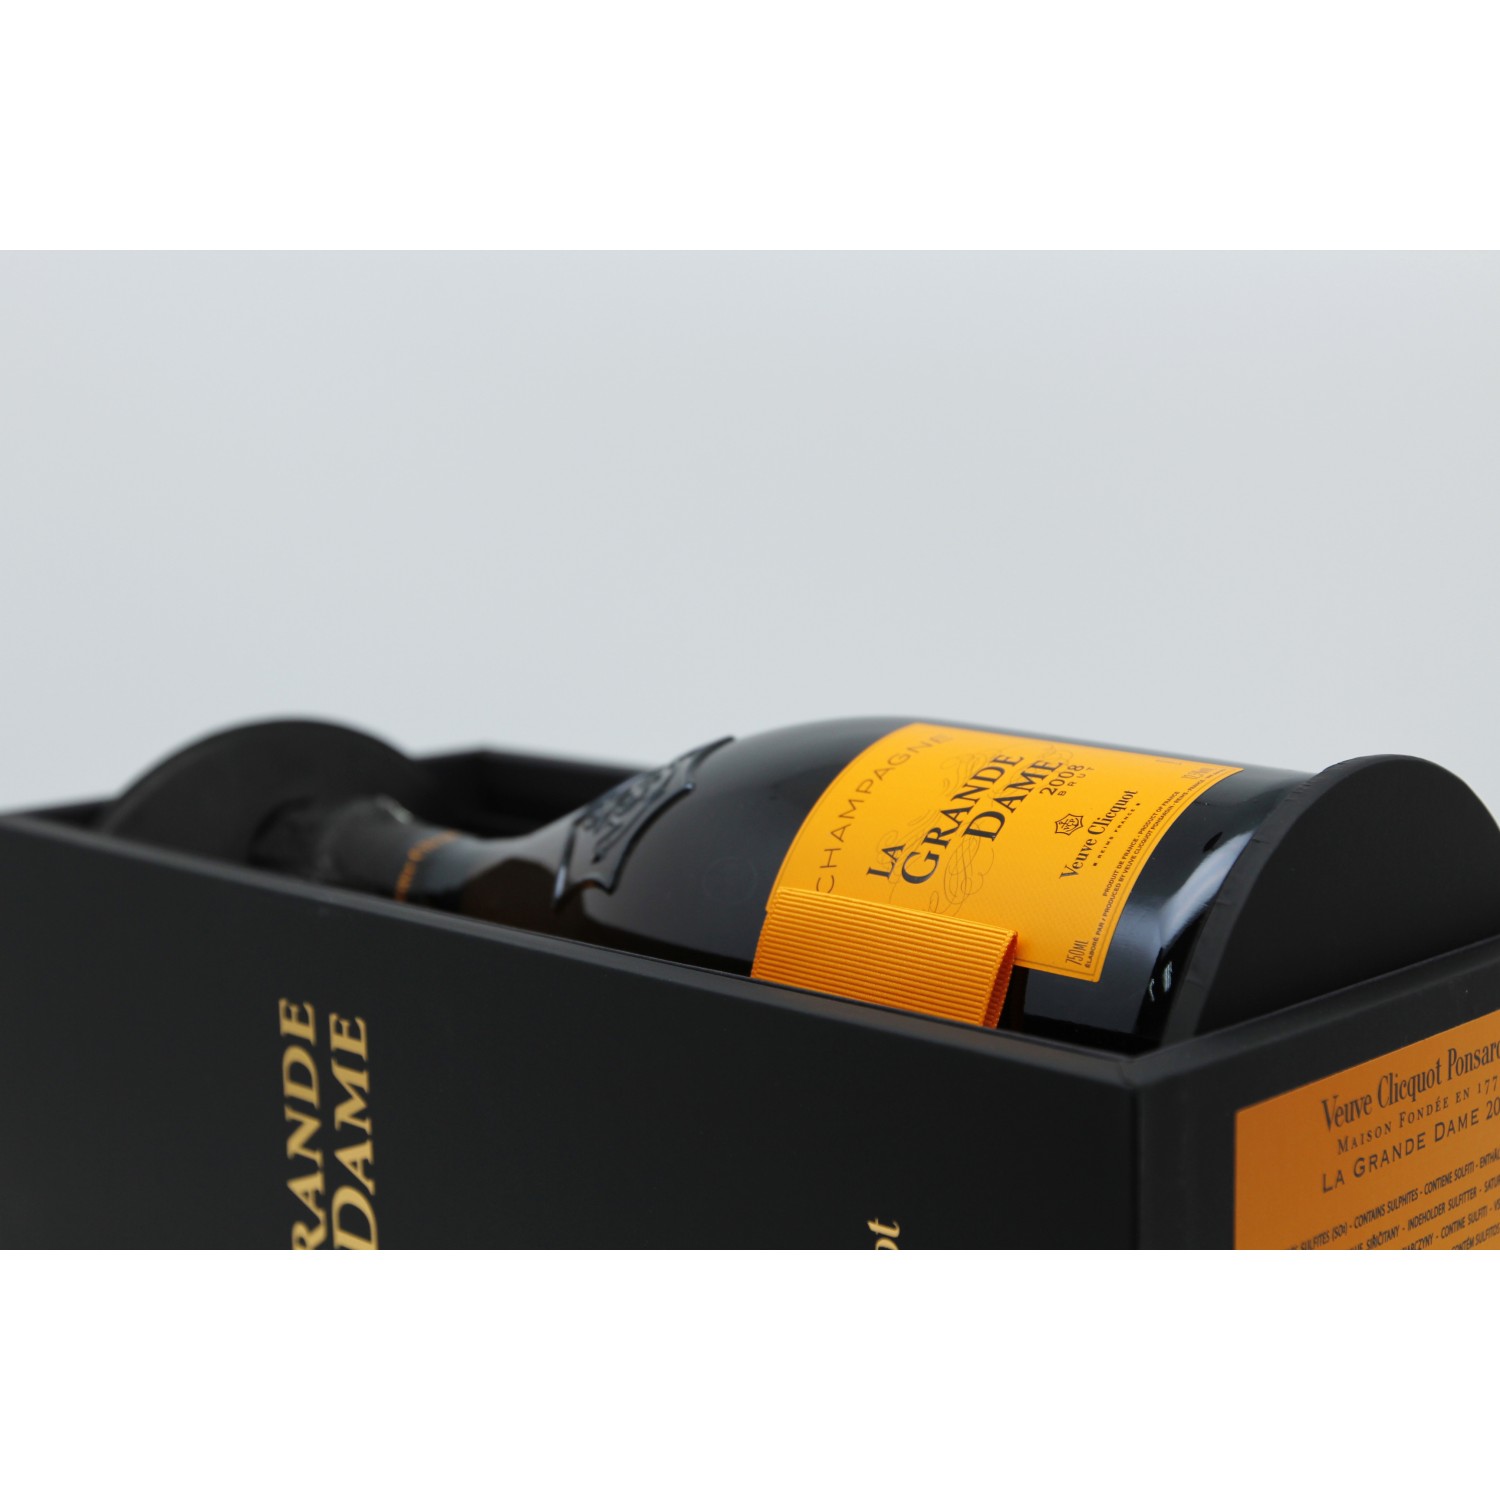 Veuve Clicquot La Grande Dame Brut Champagne 2008 Gift Box, 750ml